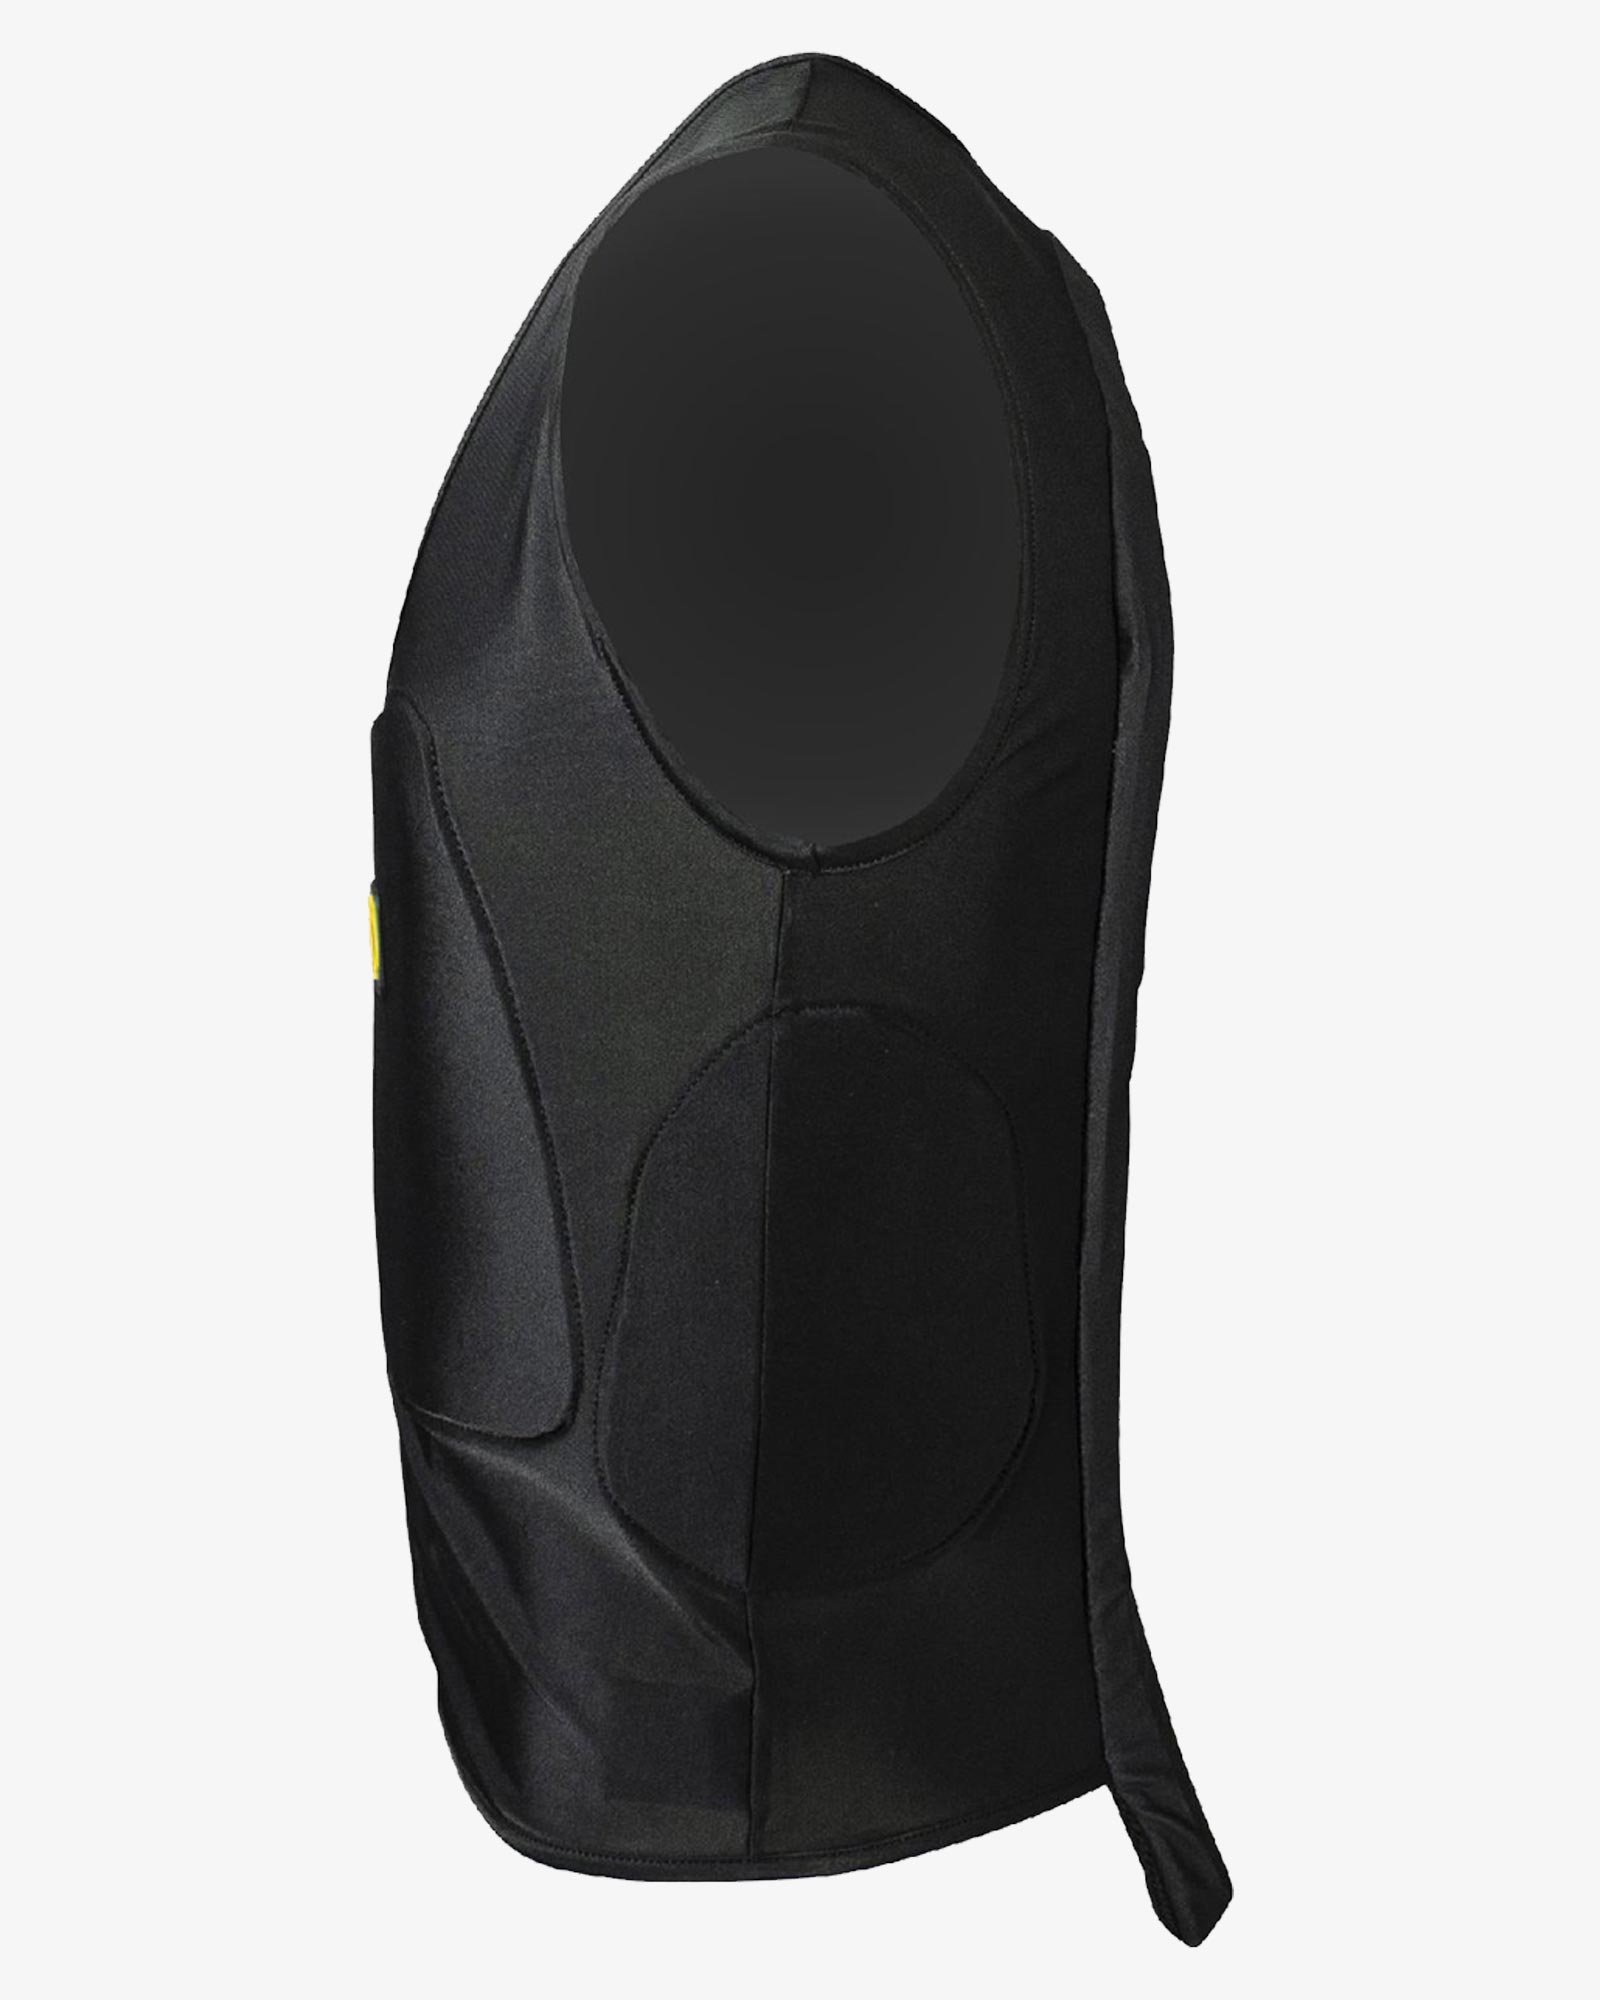 PROMOZIONE Gilet adulti salvaschiena Safety vest Pro Adult con protezione laterale per equitazione X7A XS - foto 7